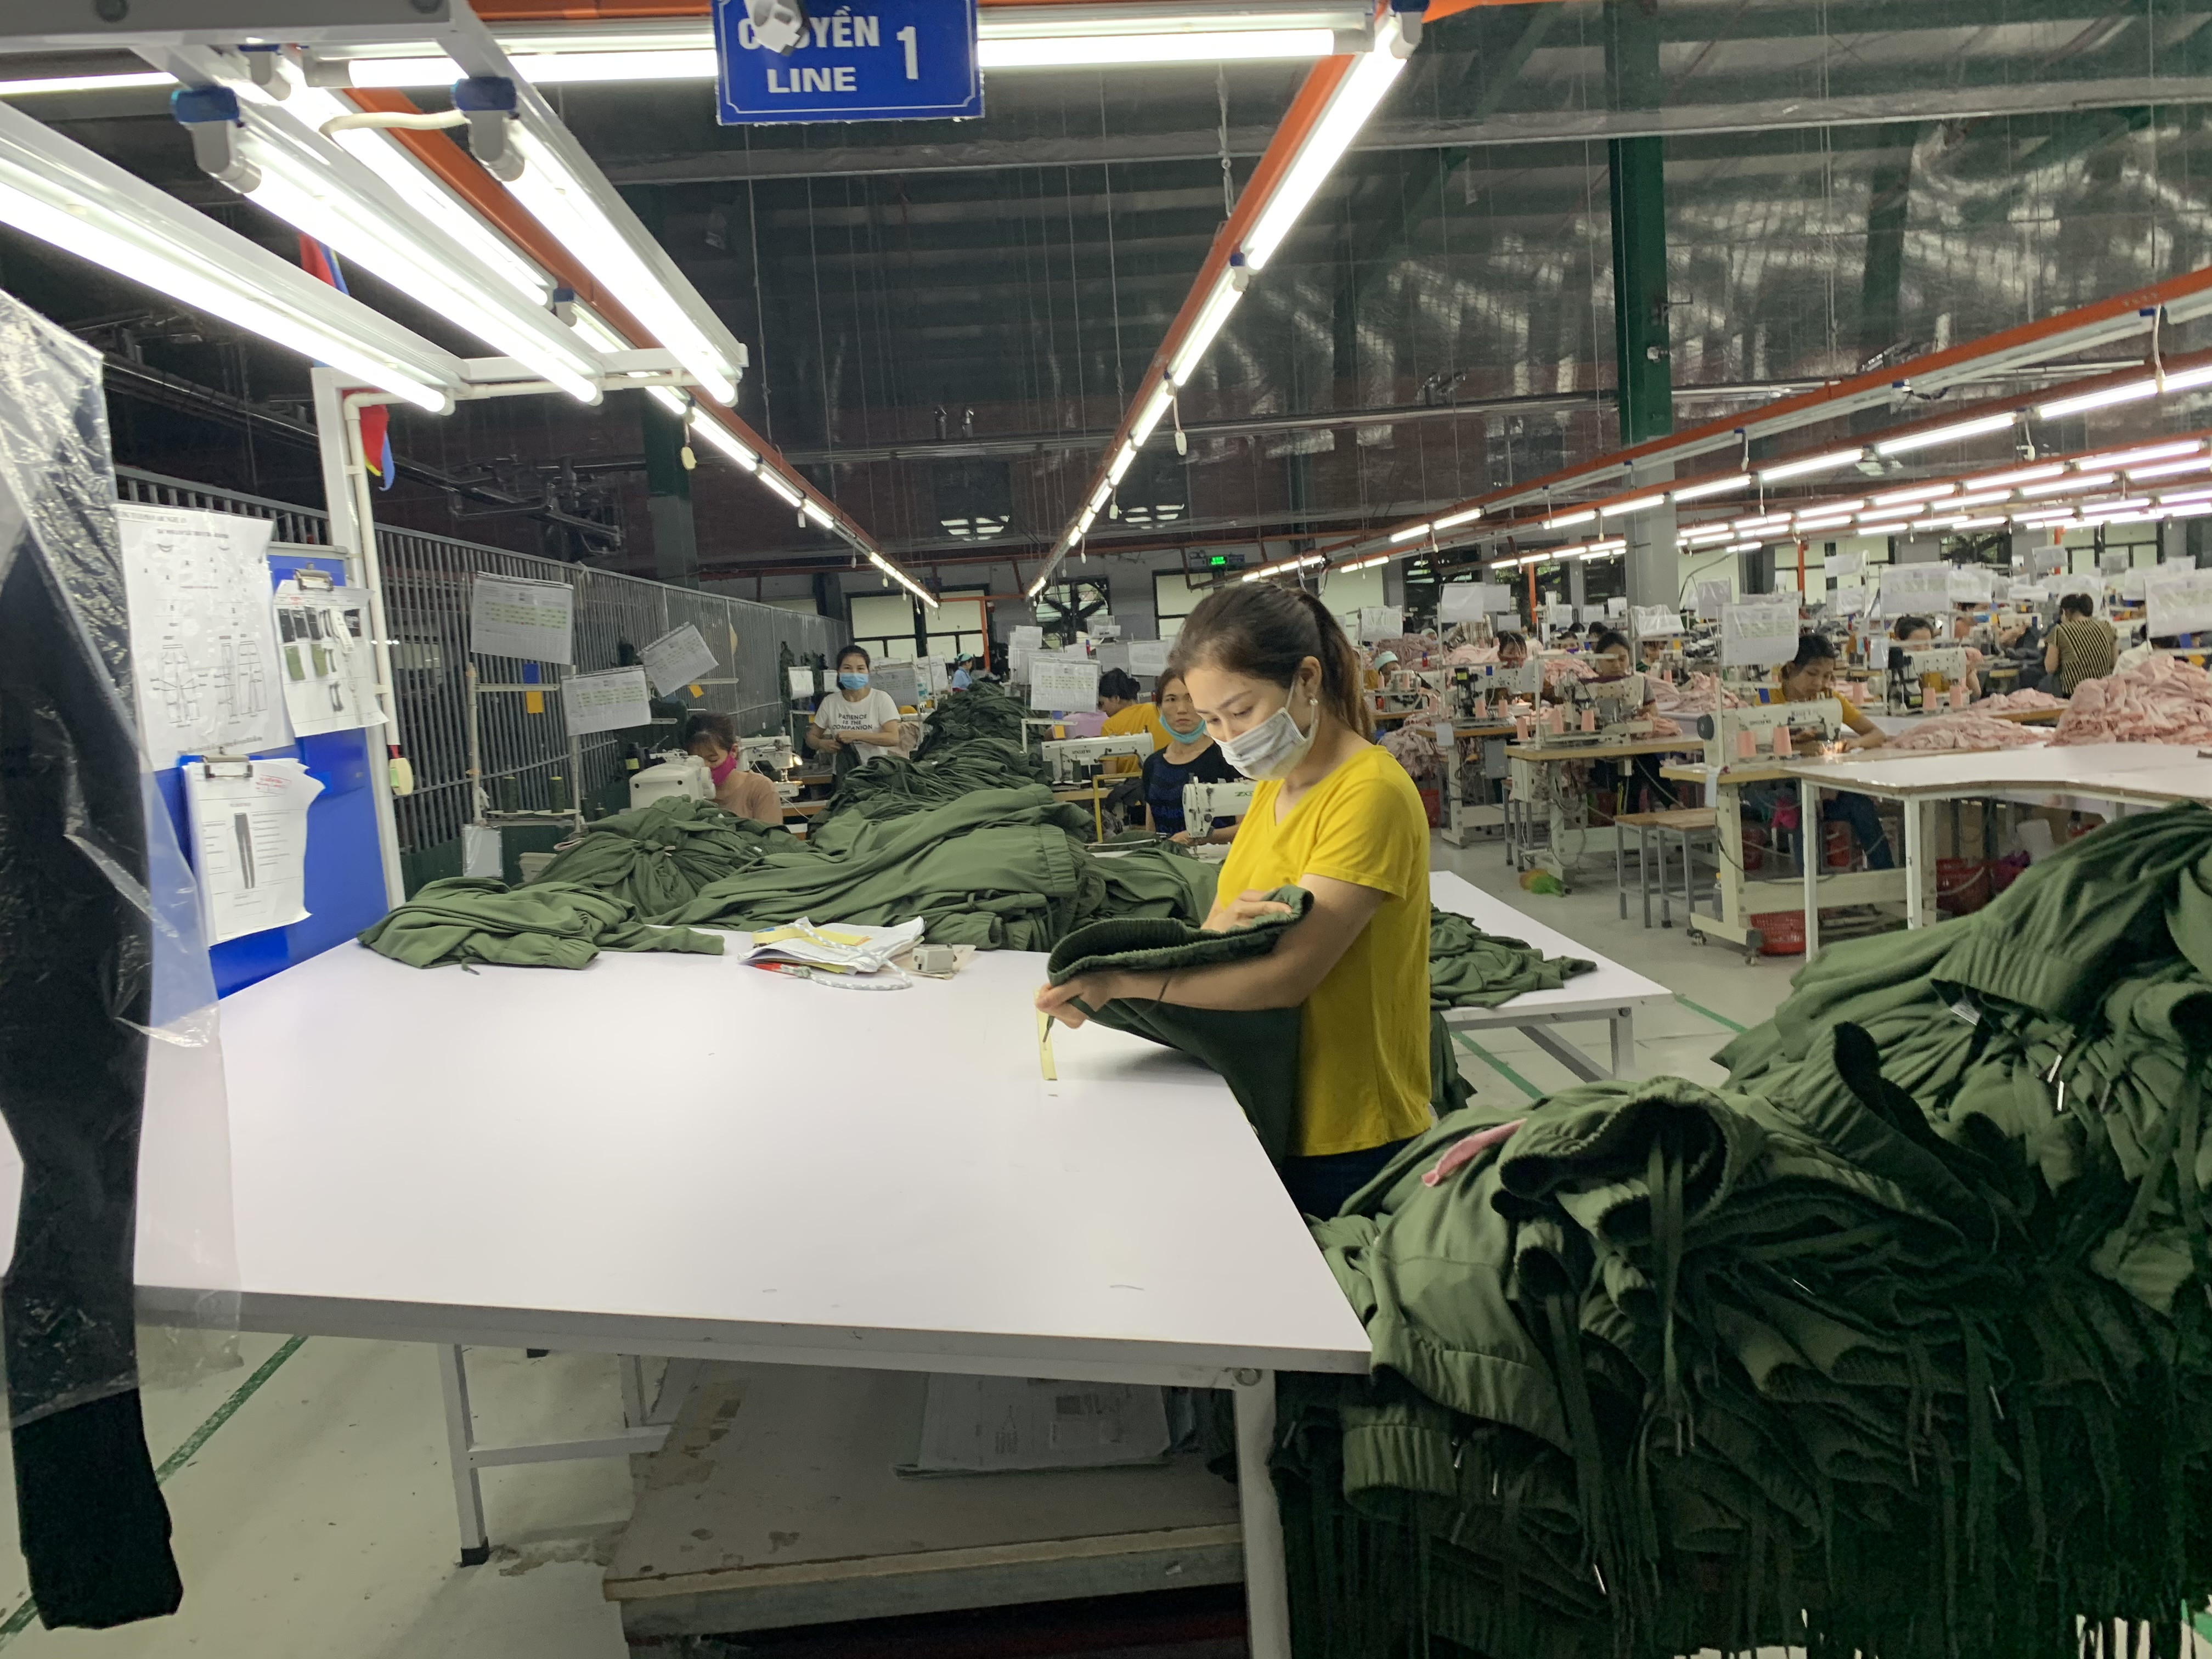 Sản xuất công nghiệp phụ trợ theo dây chuyền khép kín đang là mục tiêu trong quy hoạch công nghiệp dệt may Nghệ An. Ảnh Thu Huyền